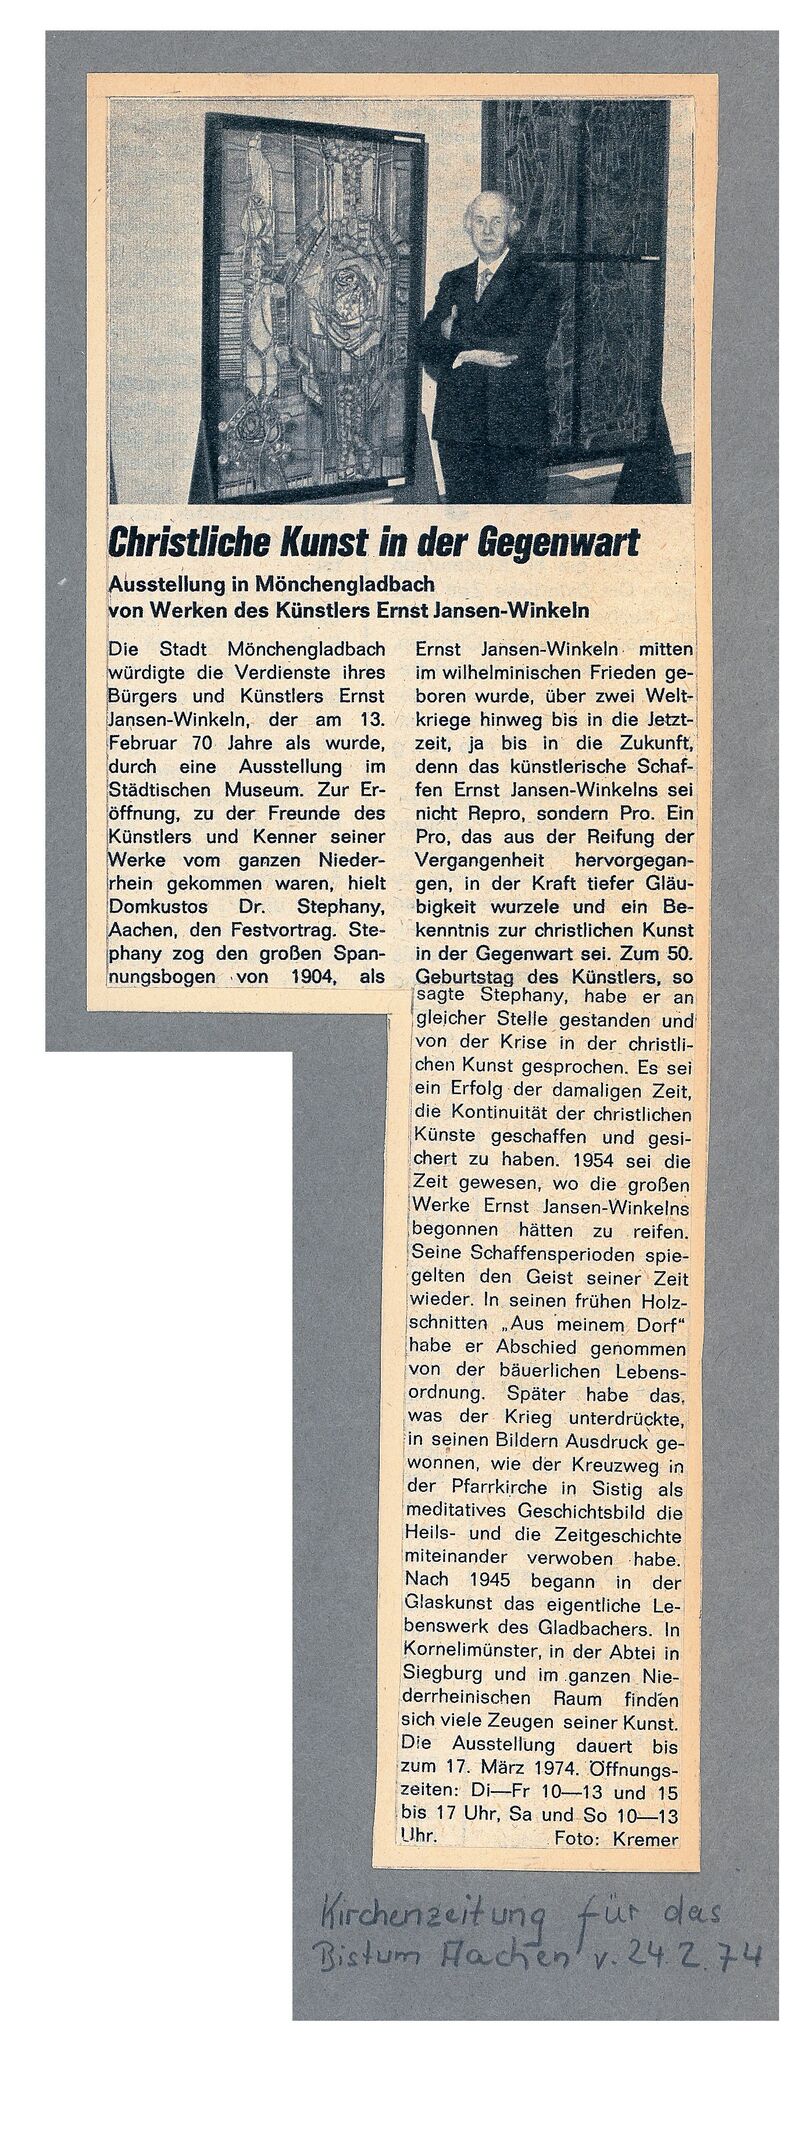 Kirchenzeitung für das Bistum Aachen, 24.2.1974